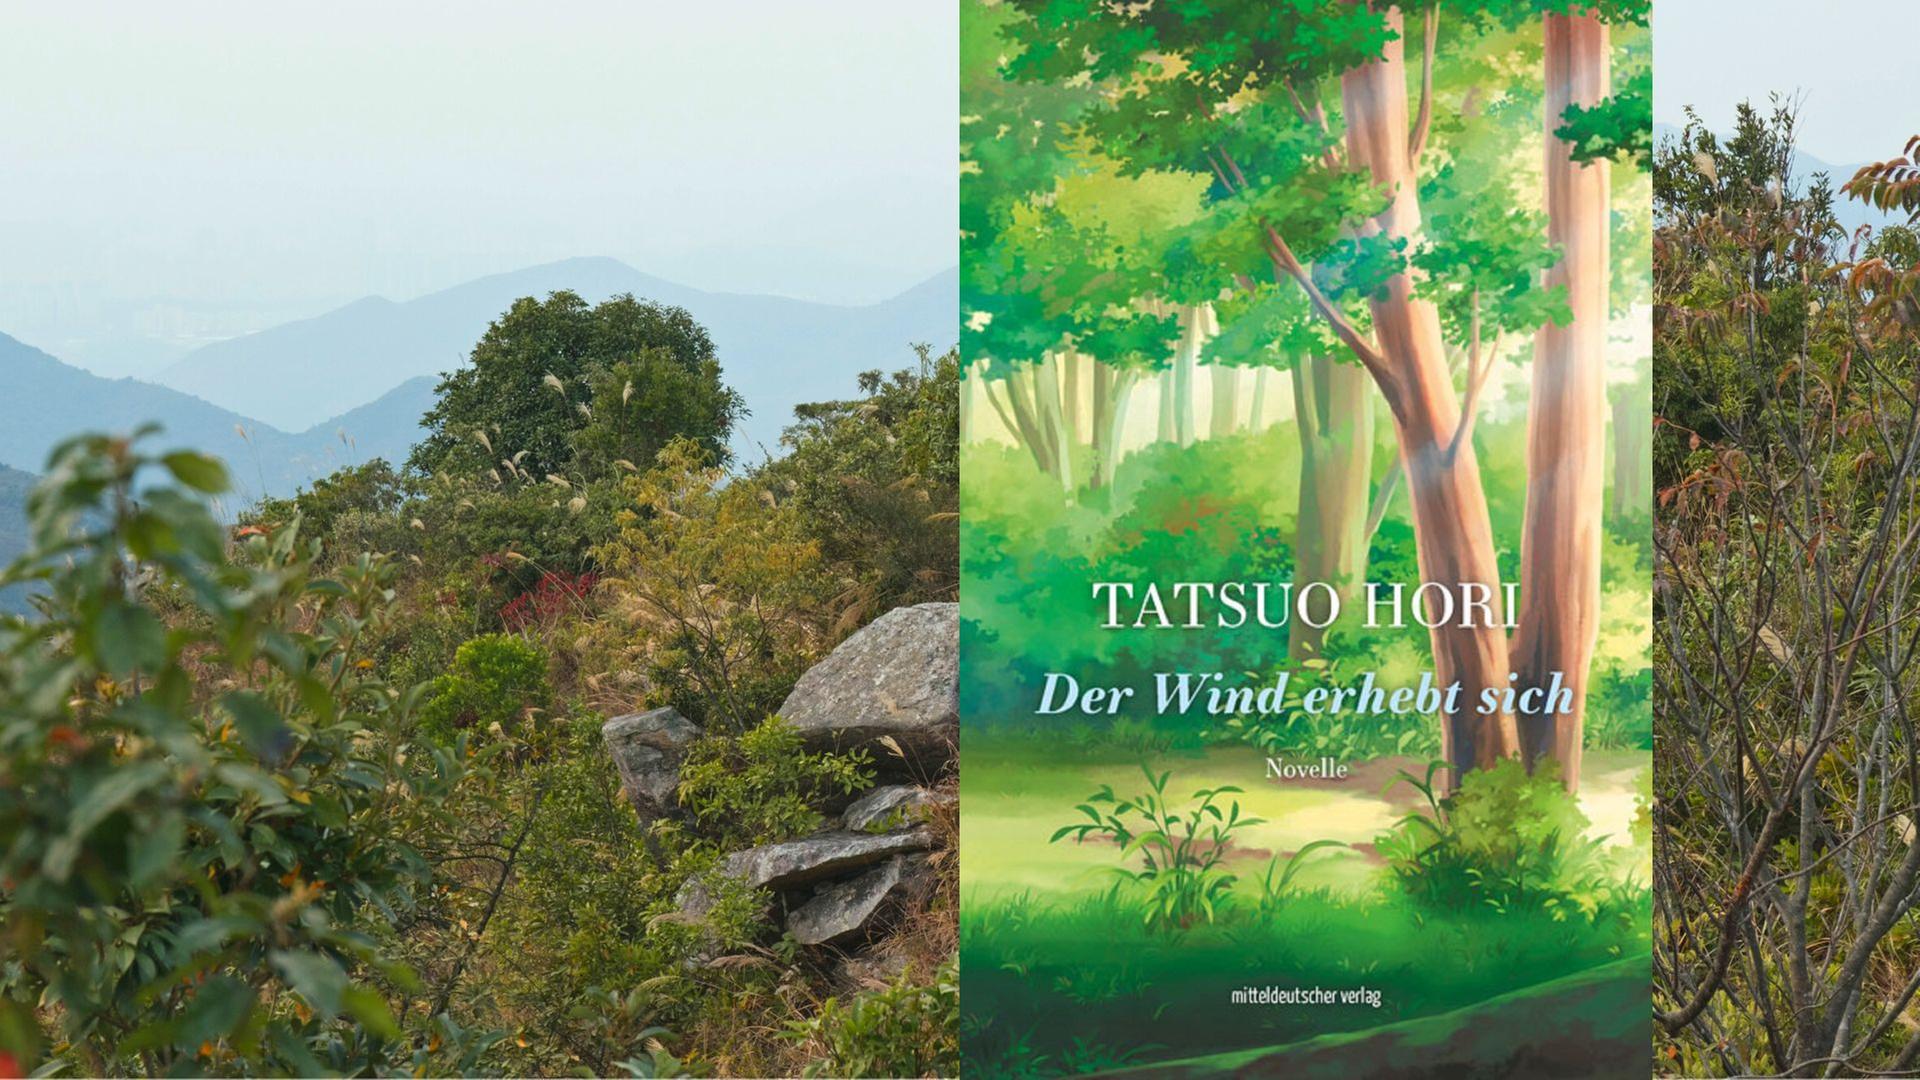 Tatsuo Hori: "Der Wind erhebt sich"